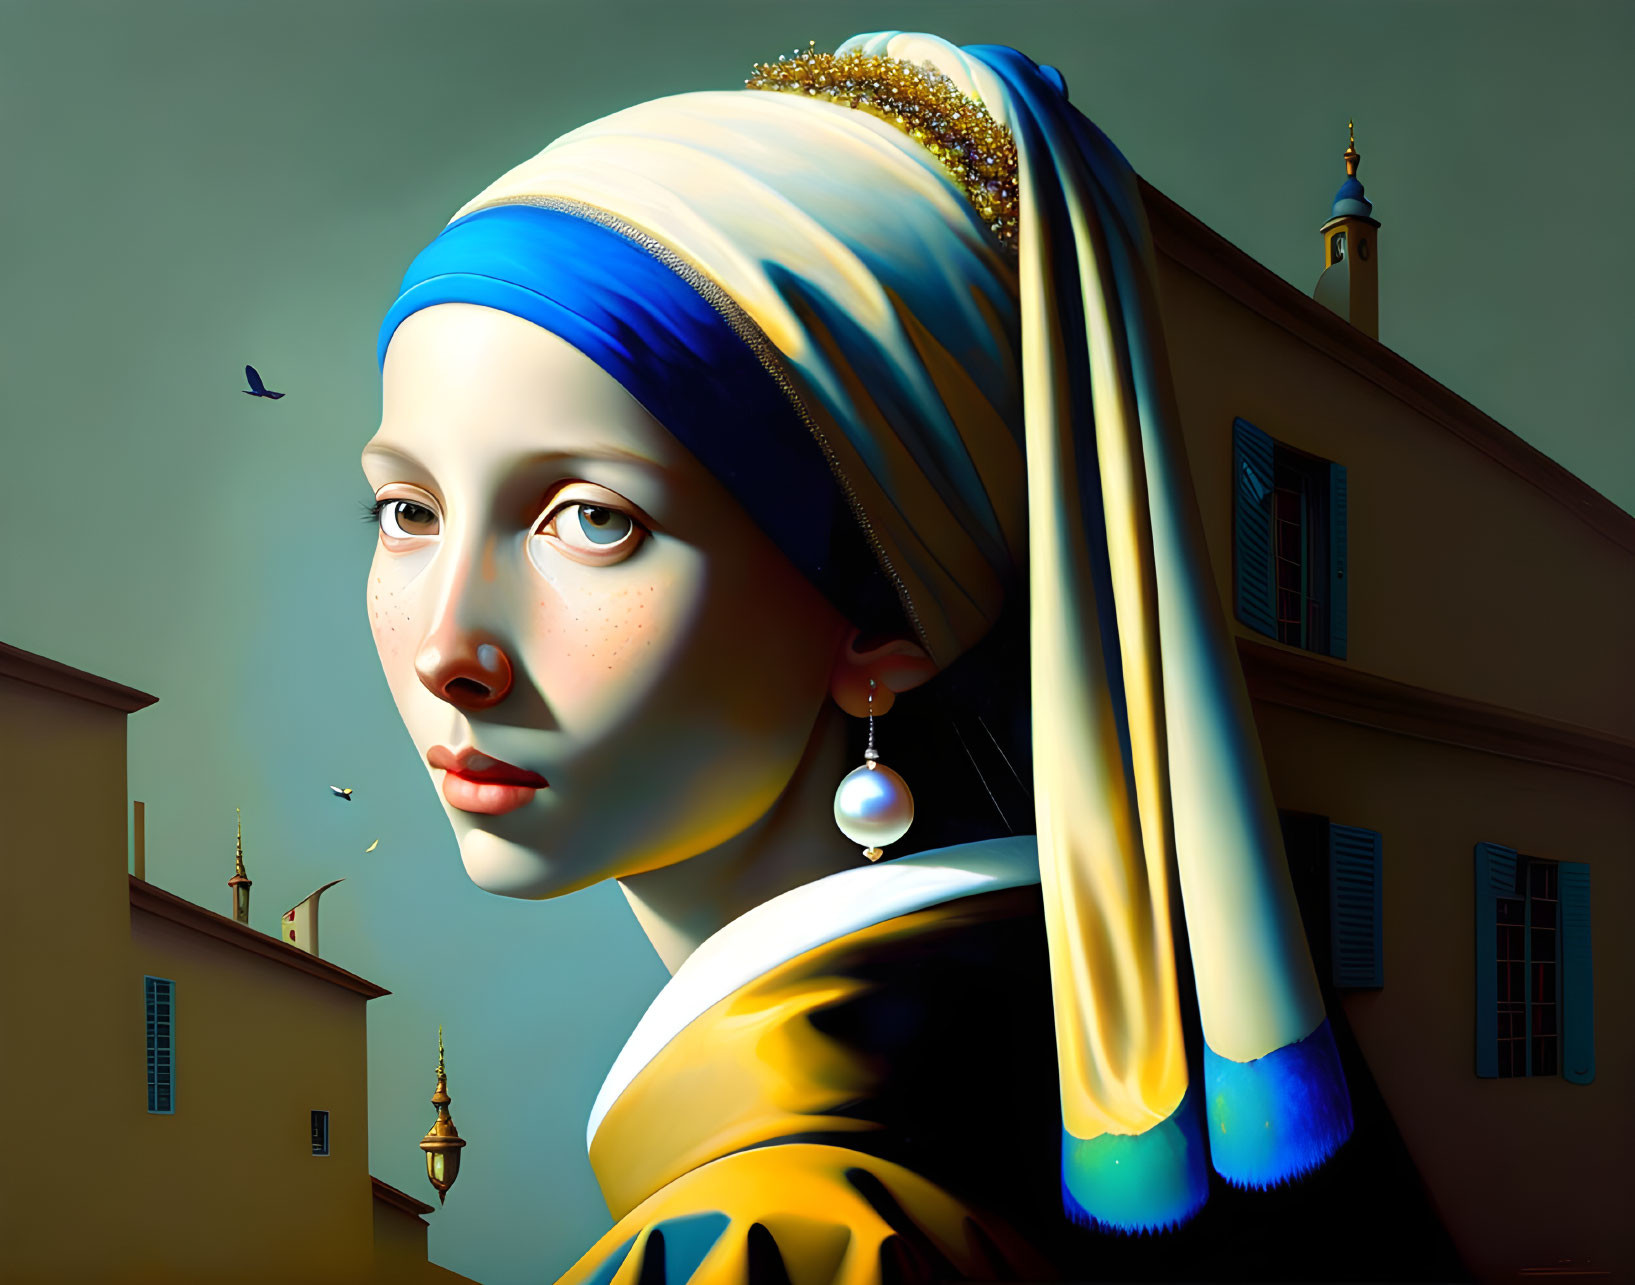 Pranckevicius' Vermeer